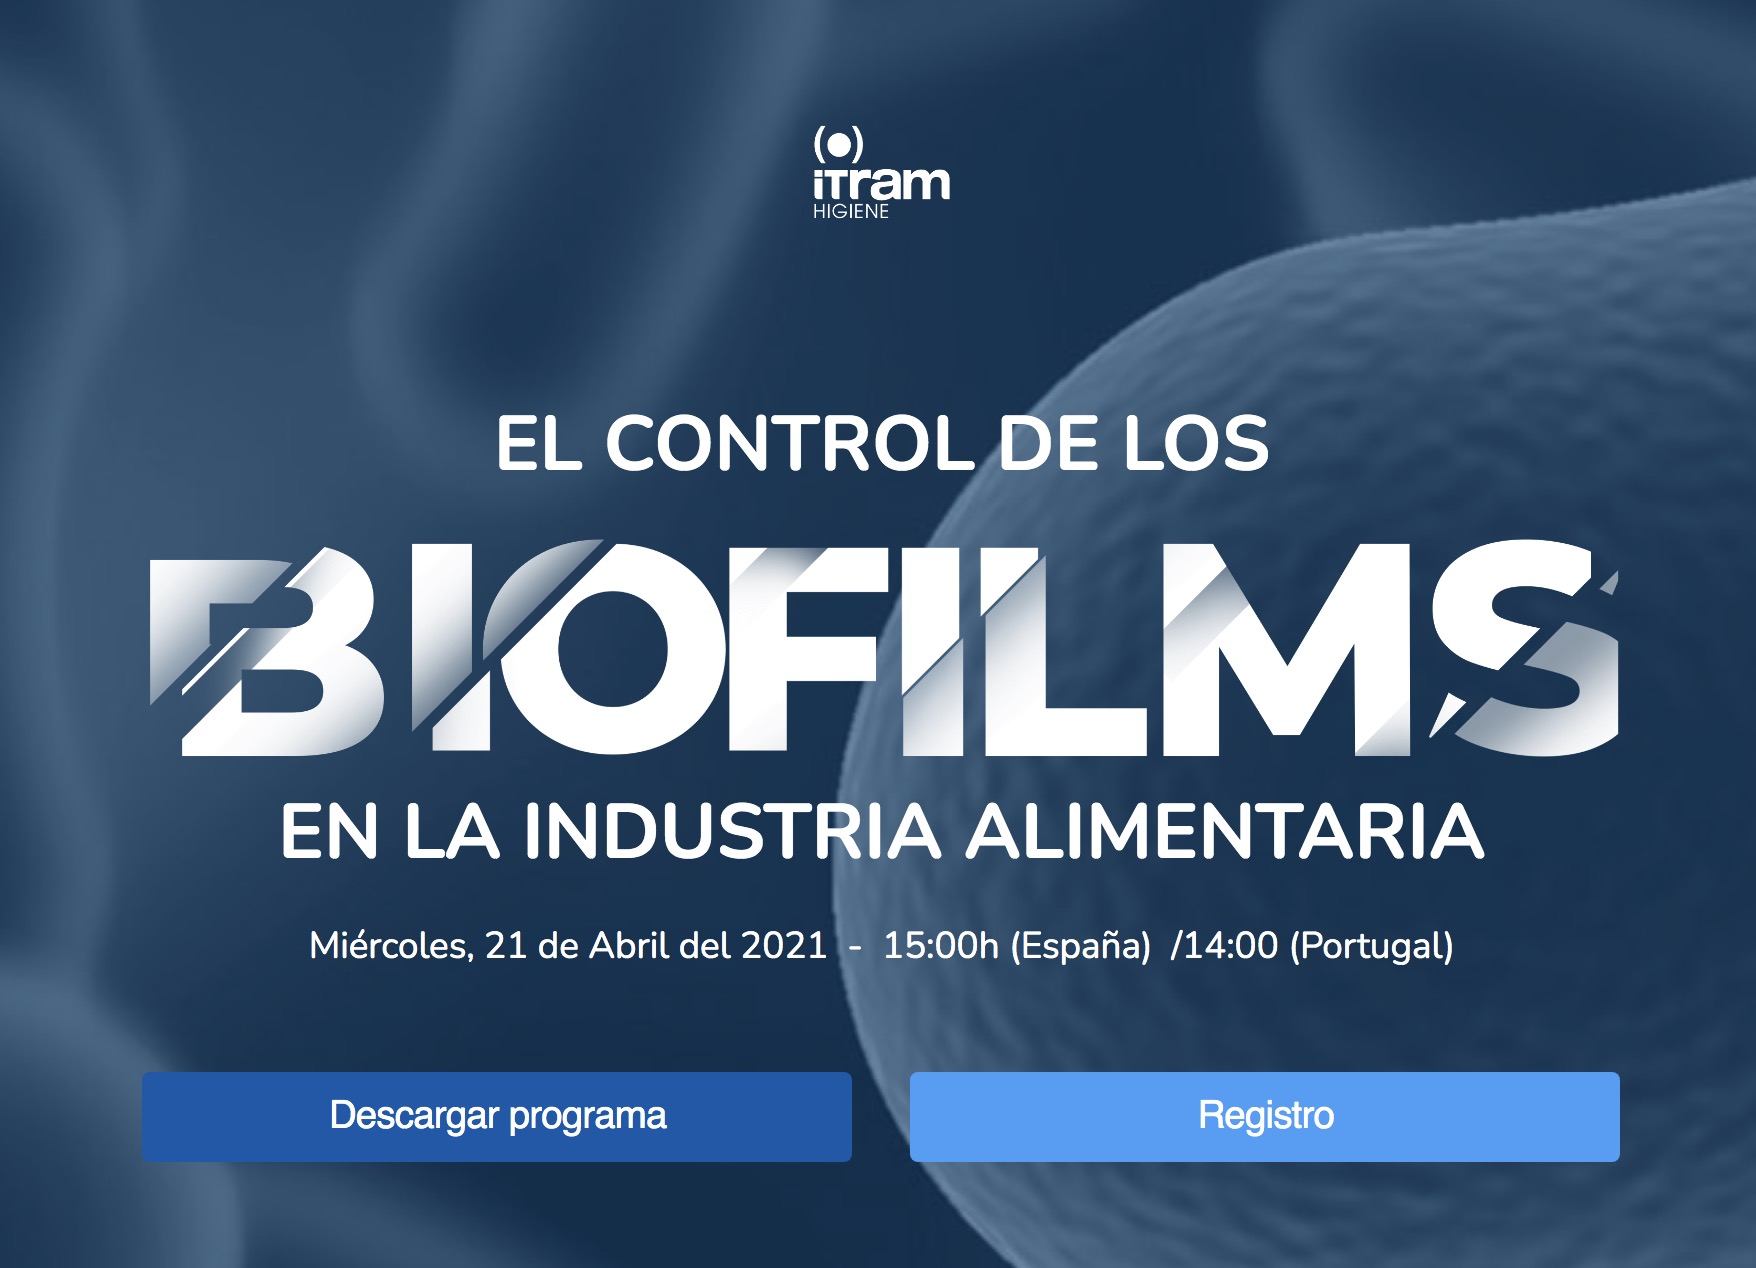 El control dels biofilms en la indústria alimentària , 21 d’abril (webinar)